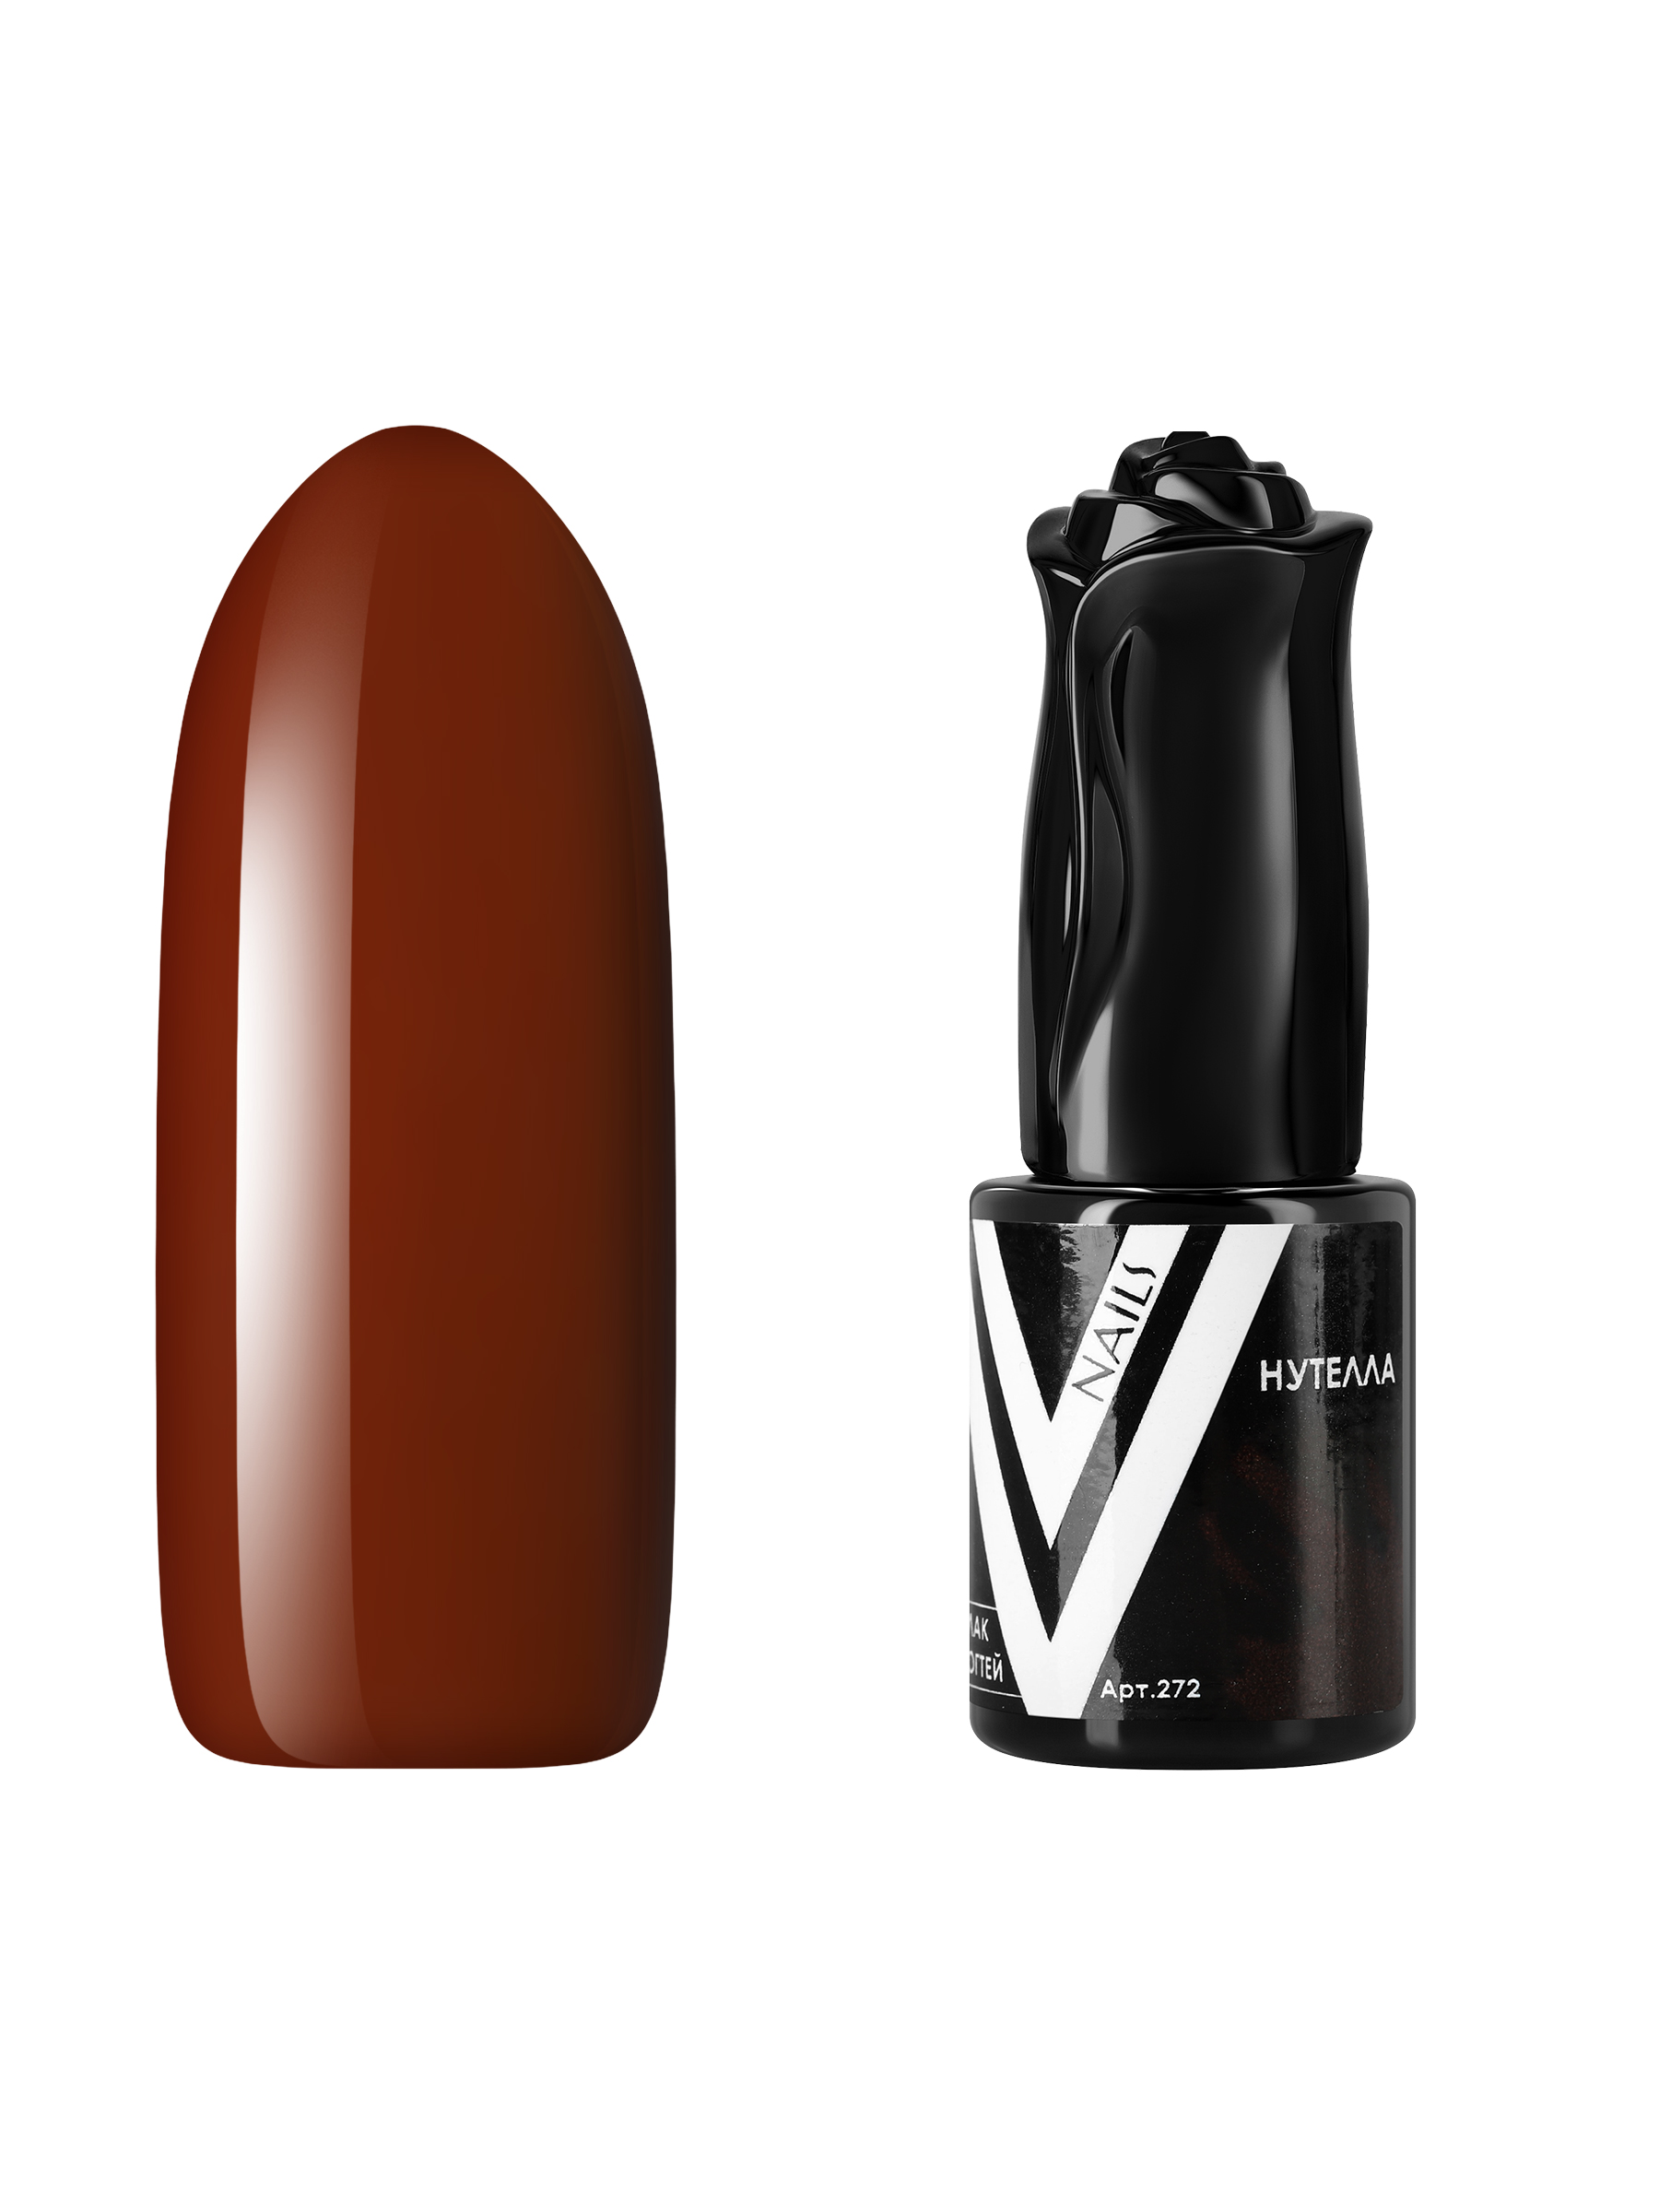 Гель-лак для ногтей Vogue Nails плотный самовыравнивающийся, коричневый, 10 мл фольга vogue nails серебряная голографическая для литья 500 кв см